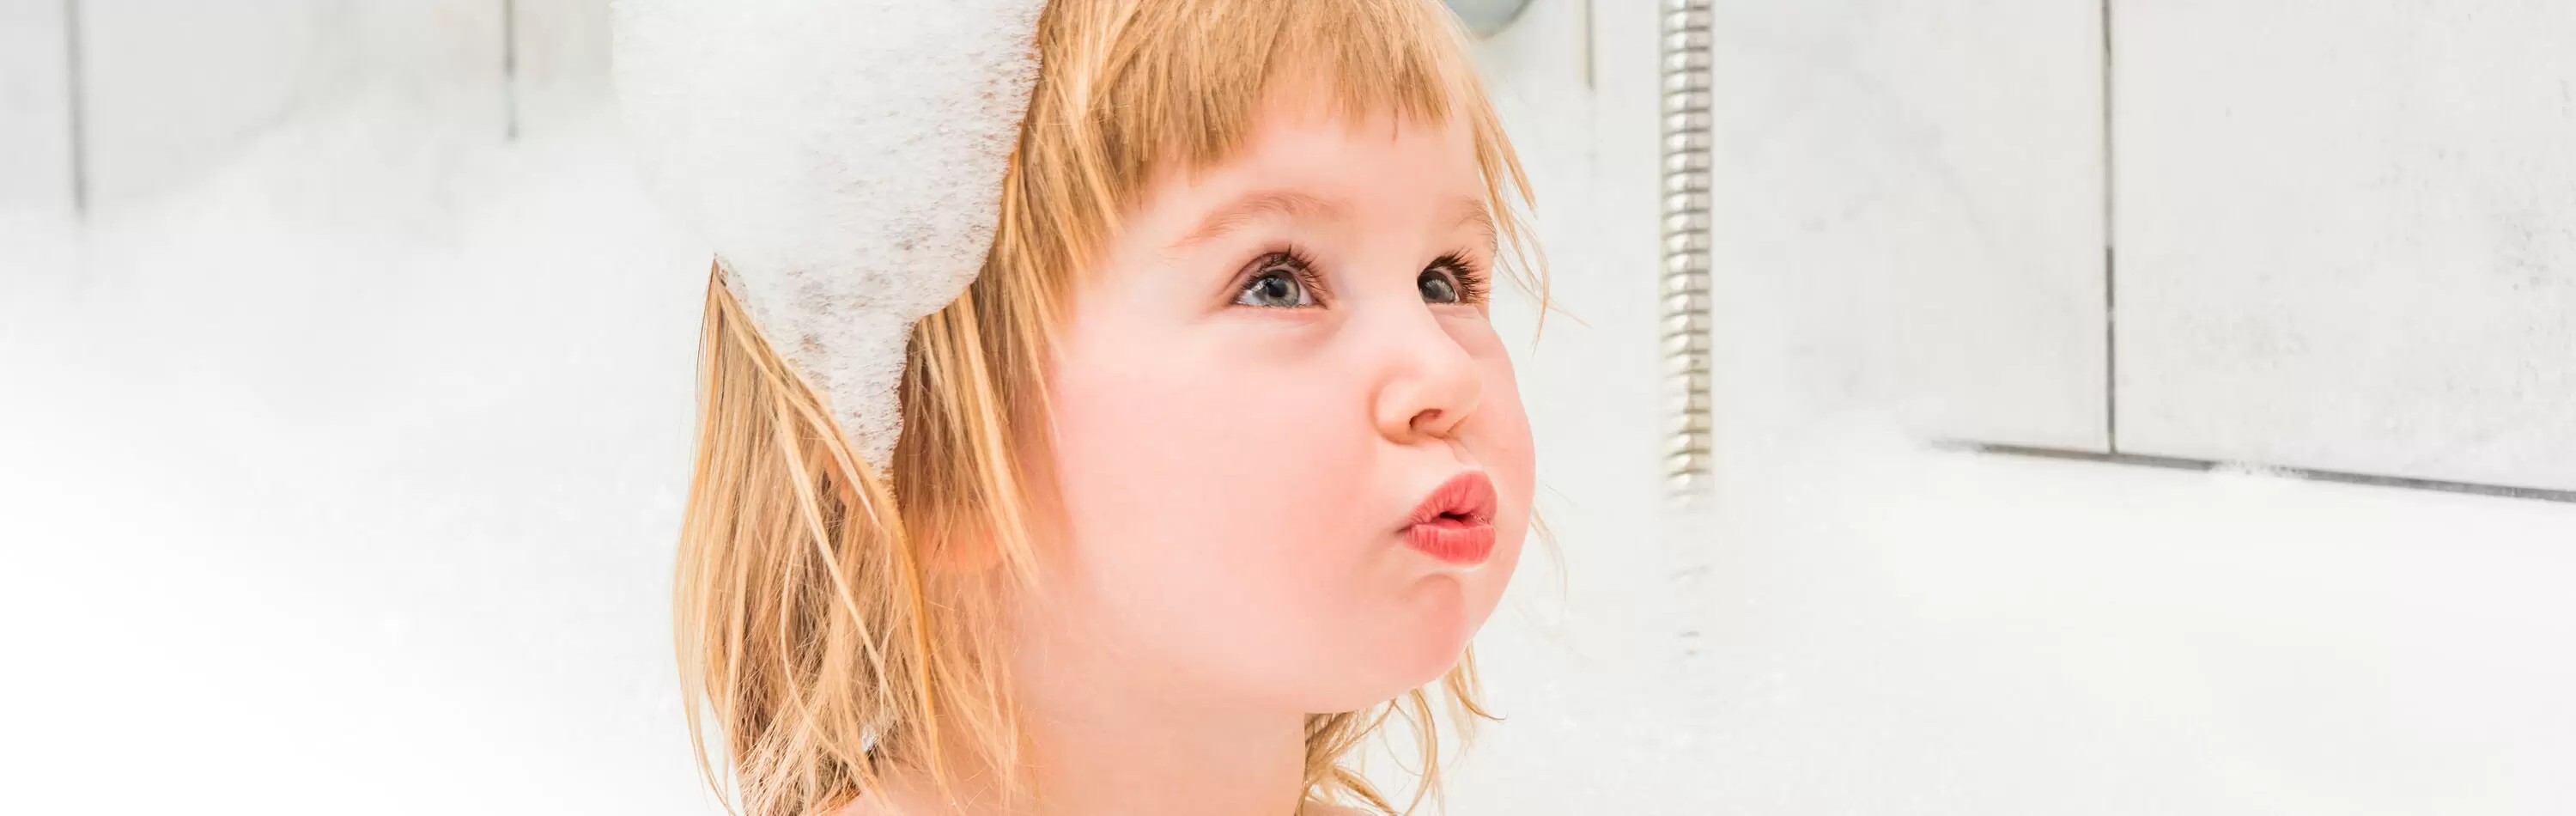 Можно ли ребенку мыть голову взрослым шампунем?